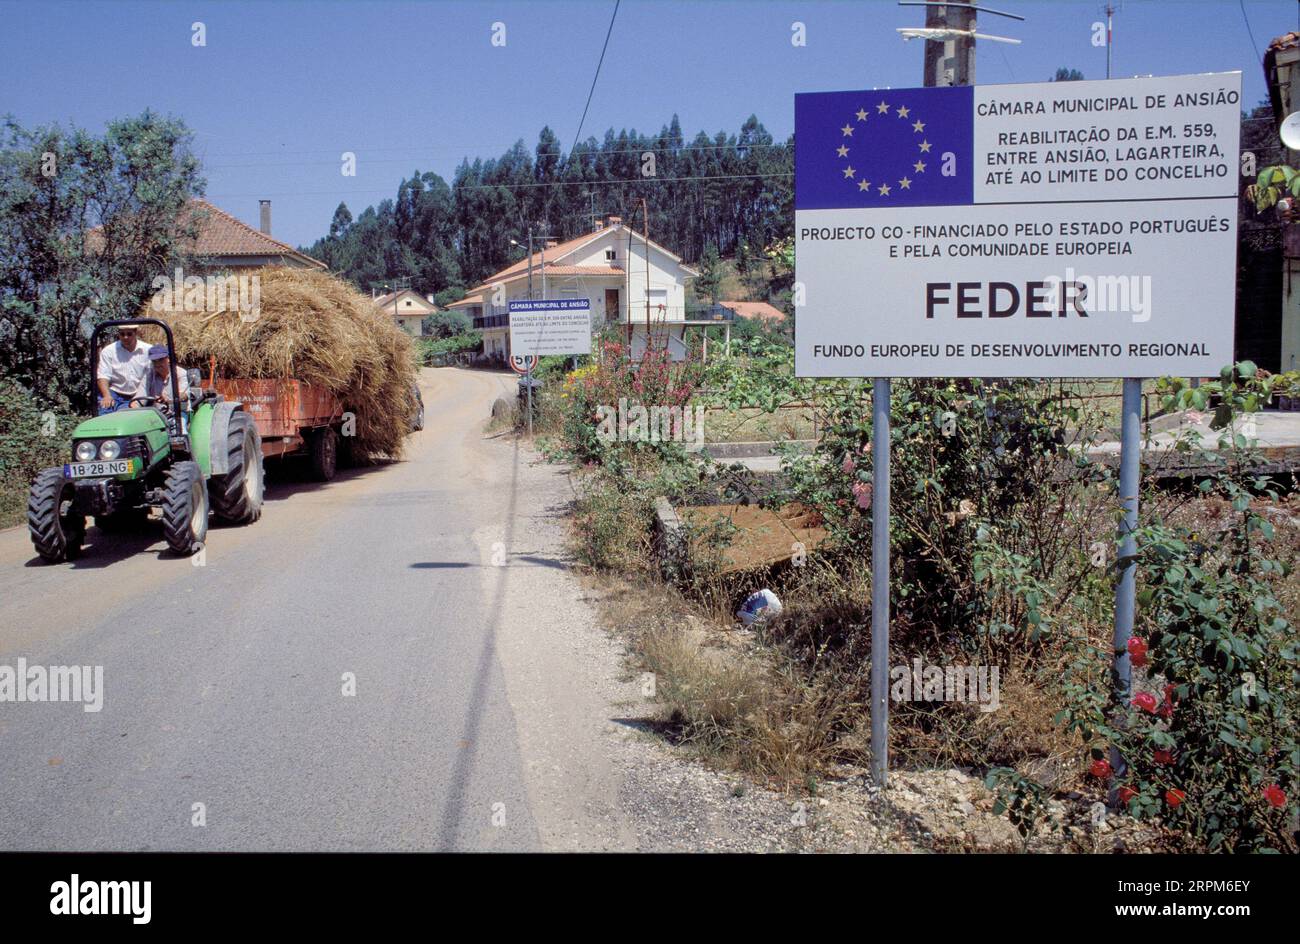 Portogallo; la firma UE informa che la costruzione di autostrade è stata finanziata con sovvenzioni comunitarie Foto Stock